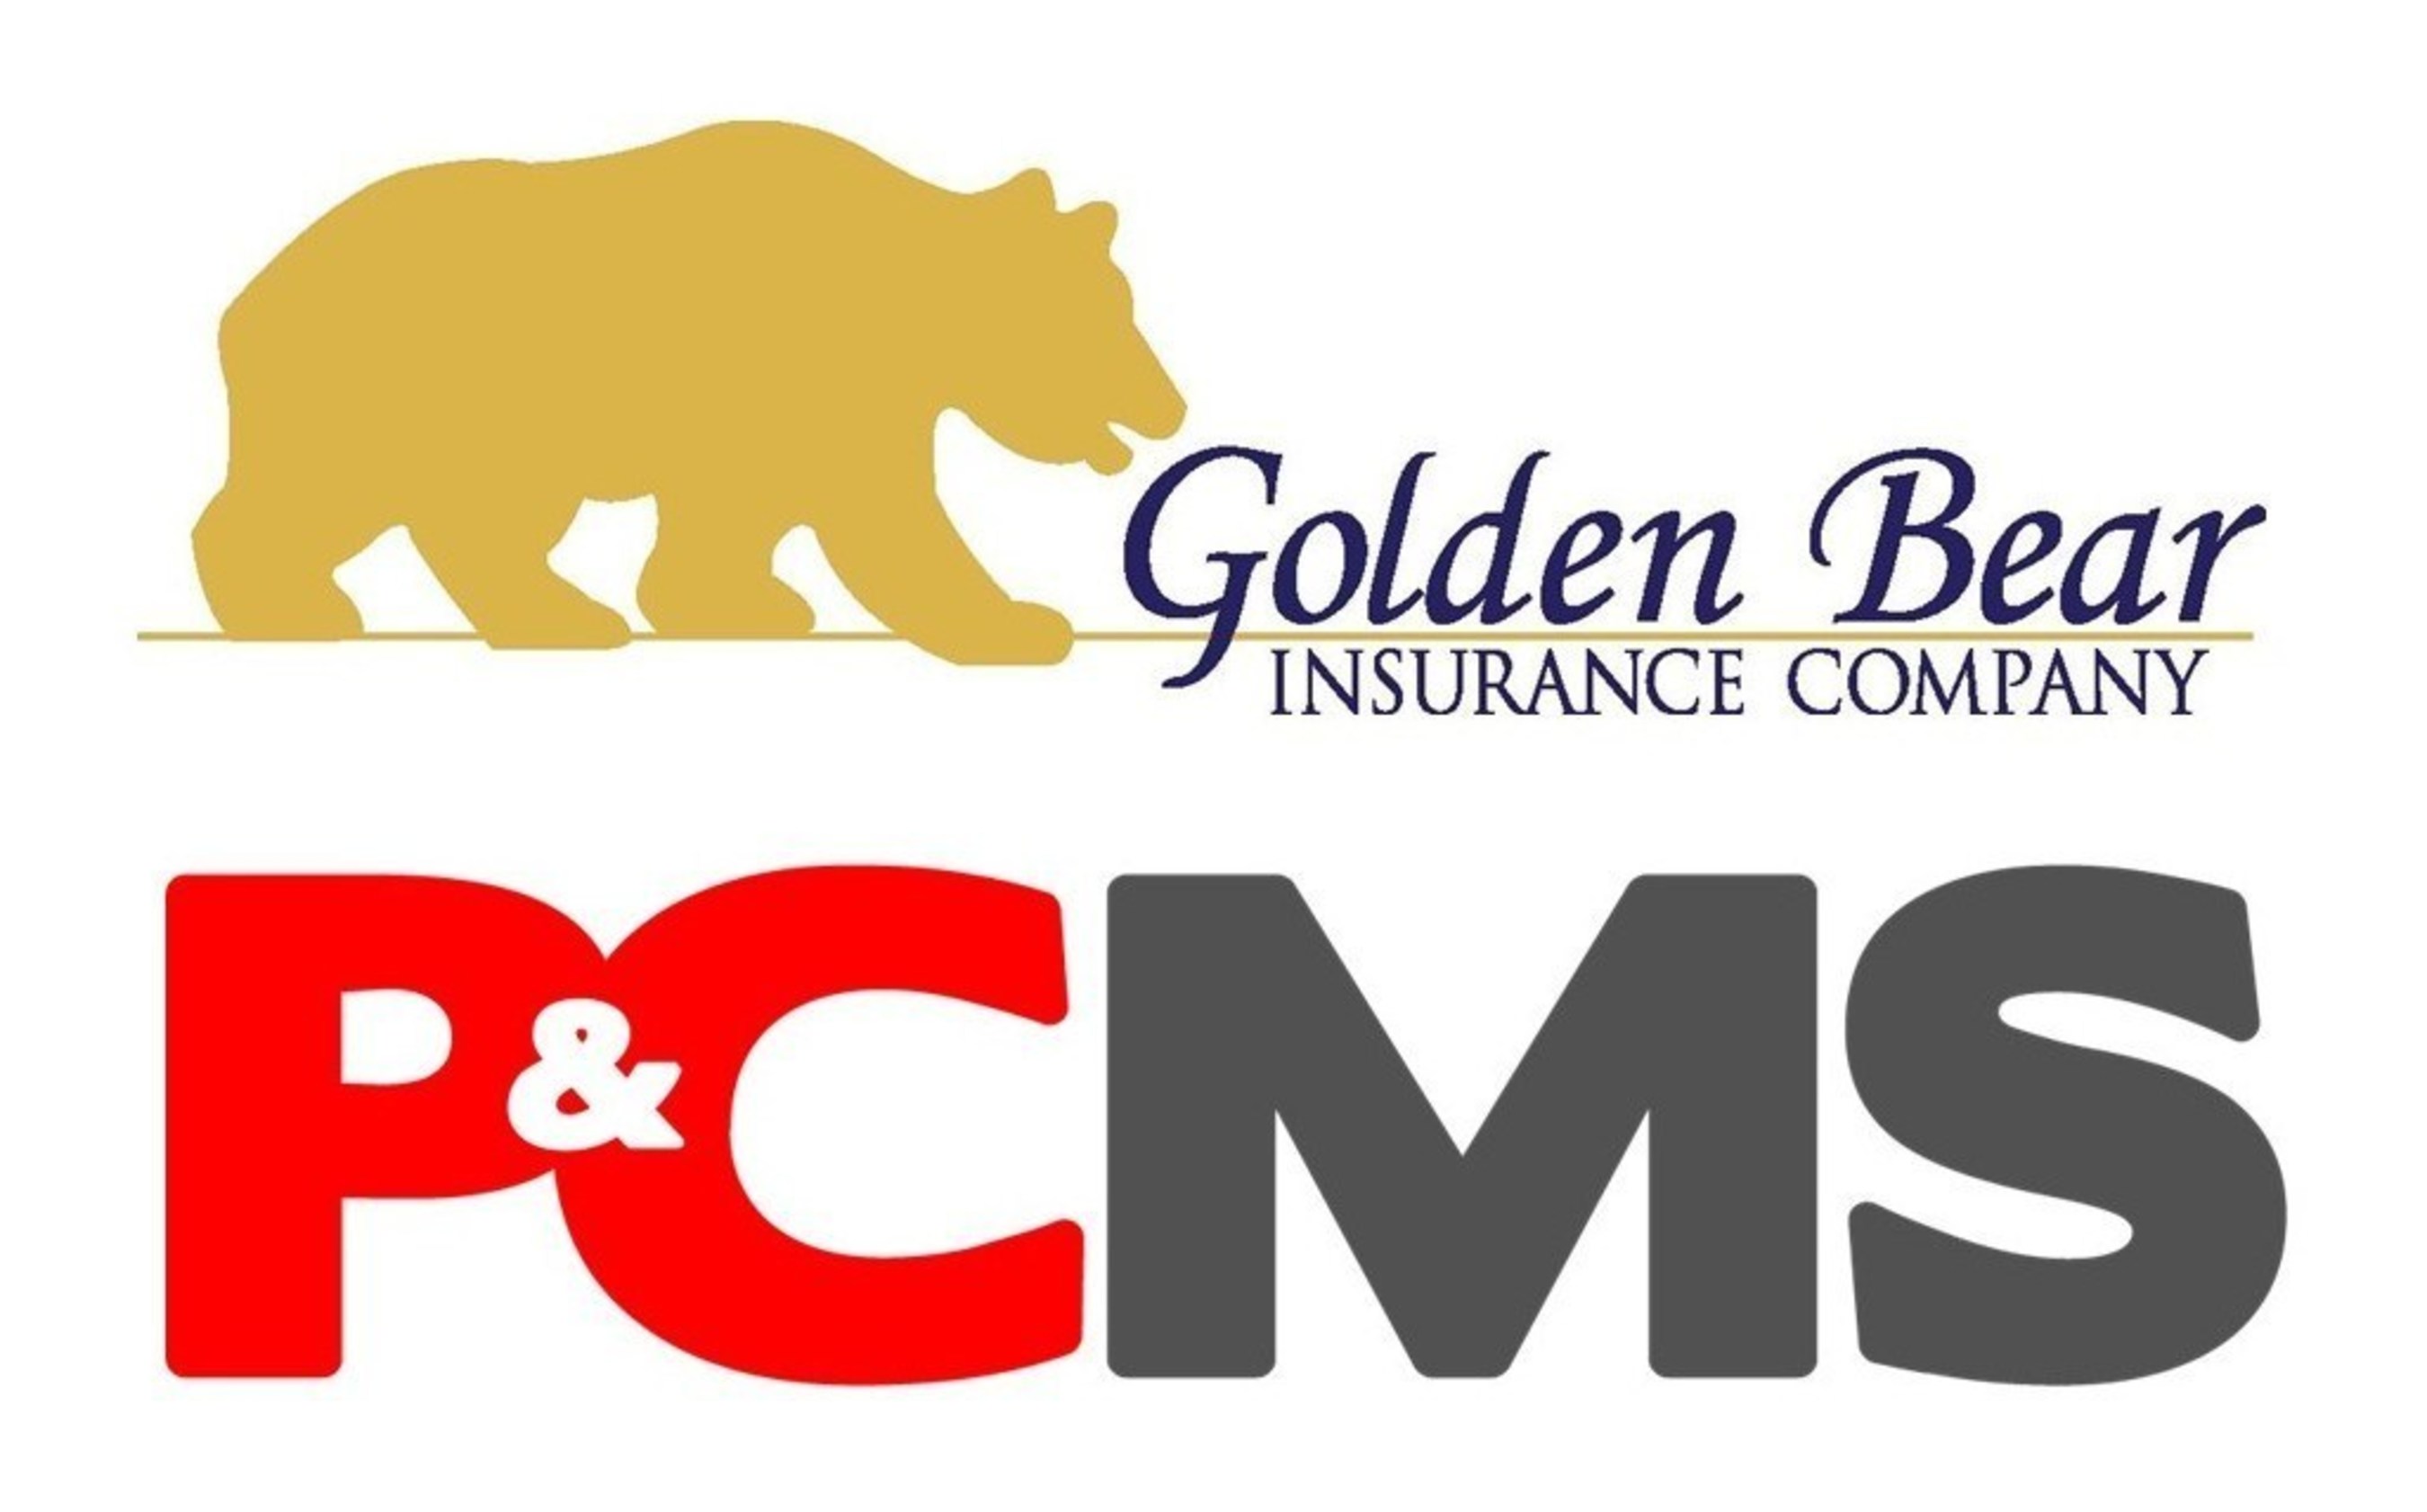 Golden Bear Insurance Company(R) Selects PCMS' Atlas(TM) Cloud P&C Solution